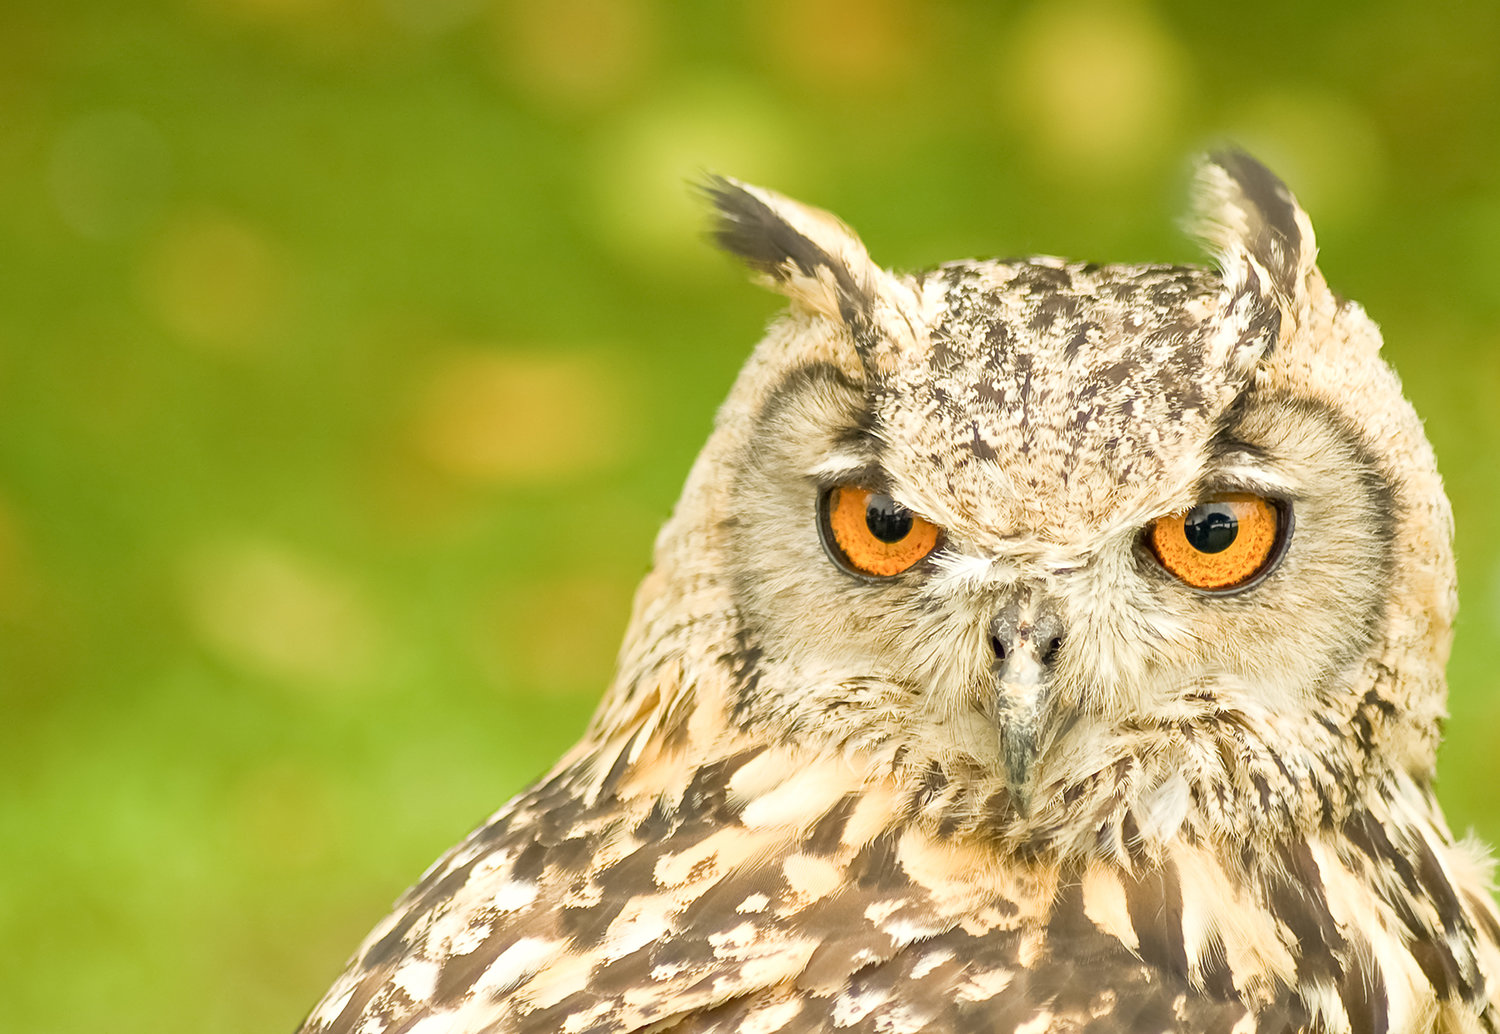 Impatient, but superb, owl